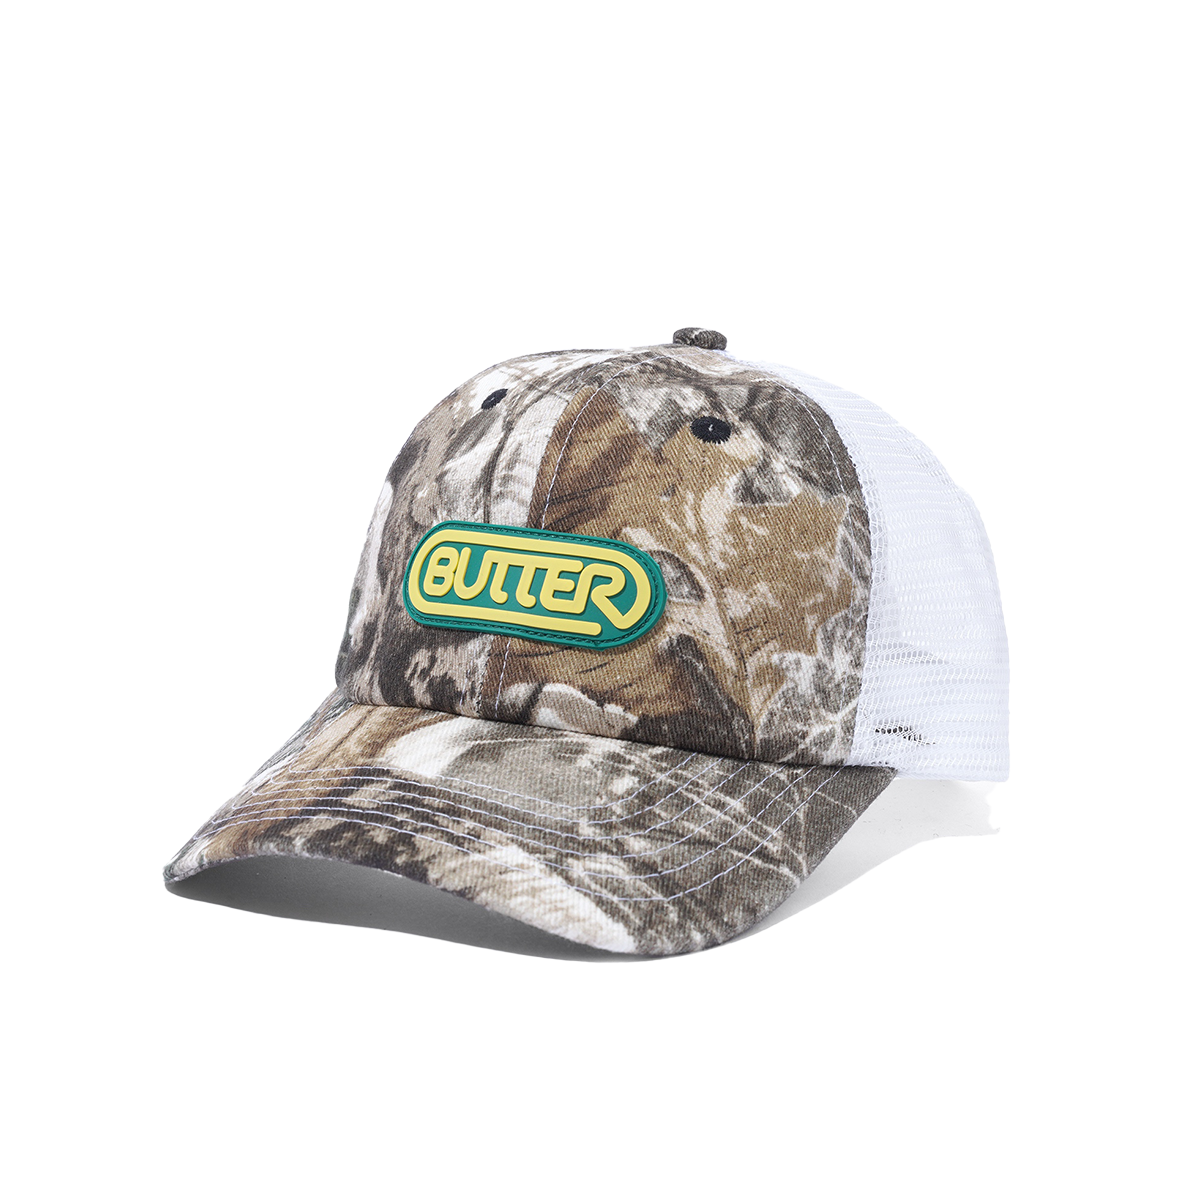 Butter Denim Trucker Hat - Forest Camo